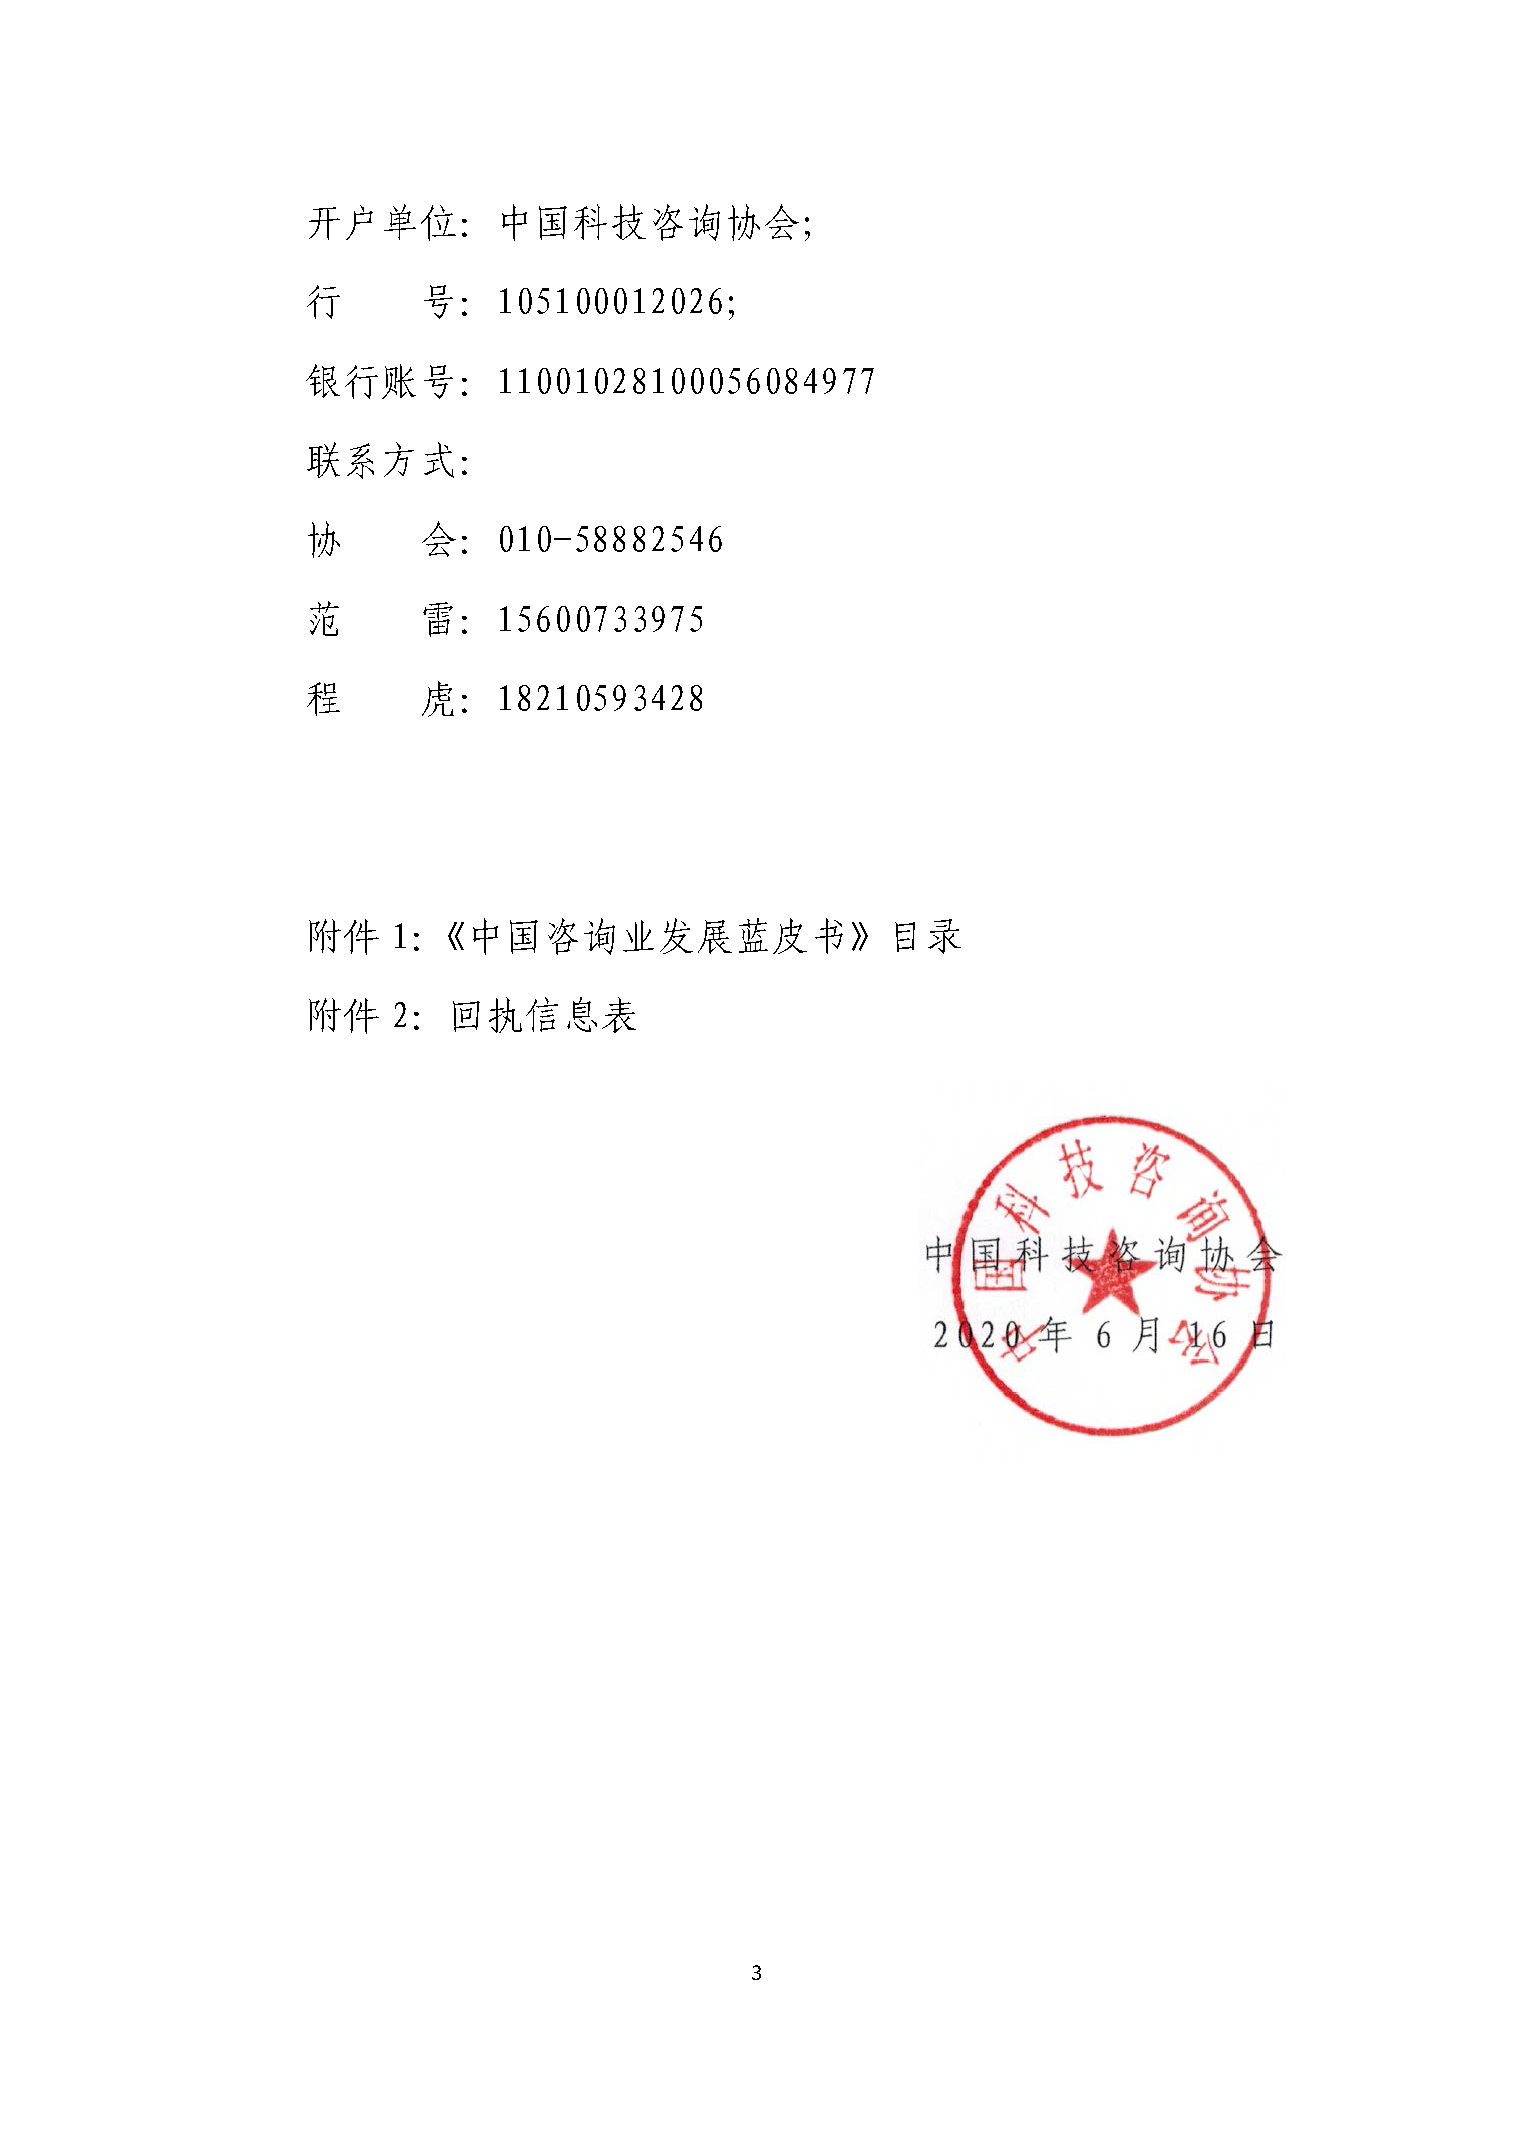 关于邀请《中国咨询业发展蓝皮书》支持单位的通知_页面_3.png